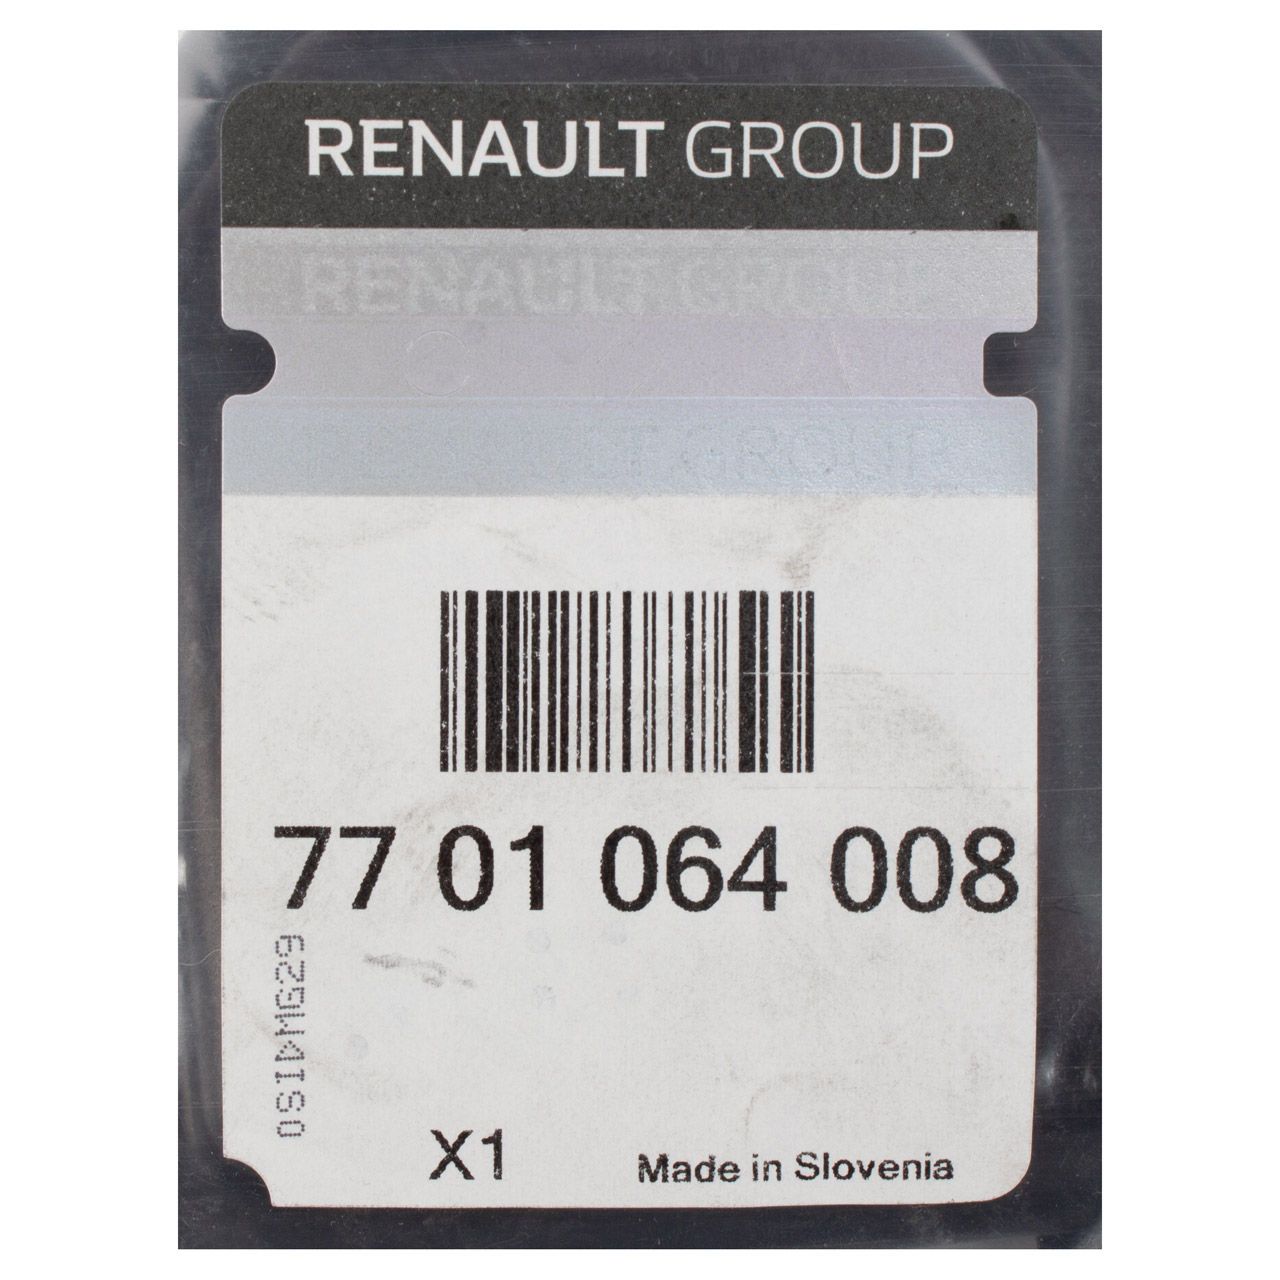 ORIGINAL Renault Abdeckung Blende Scheinwerfer Twingo 2 bis 12.2011 7701064008